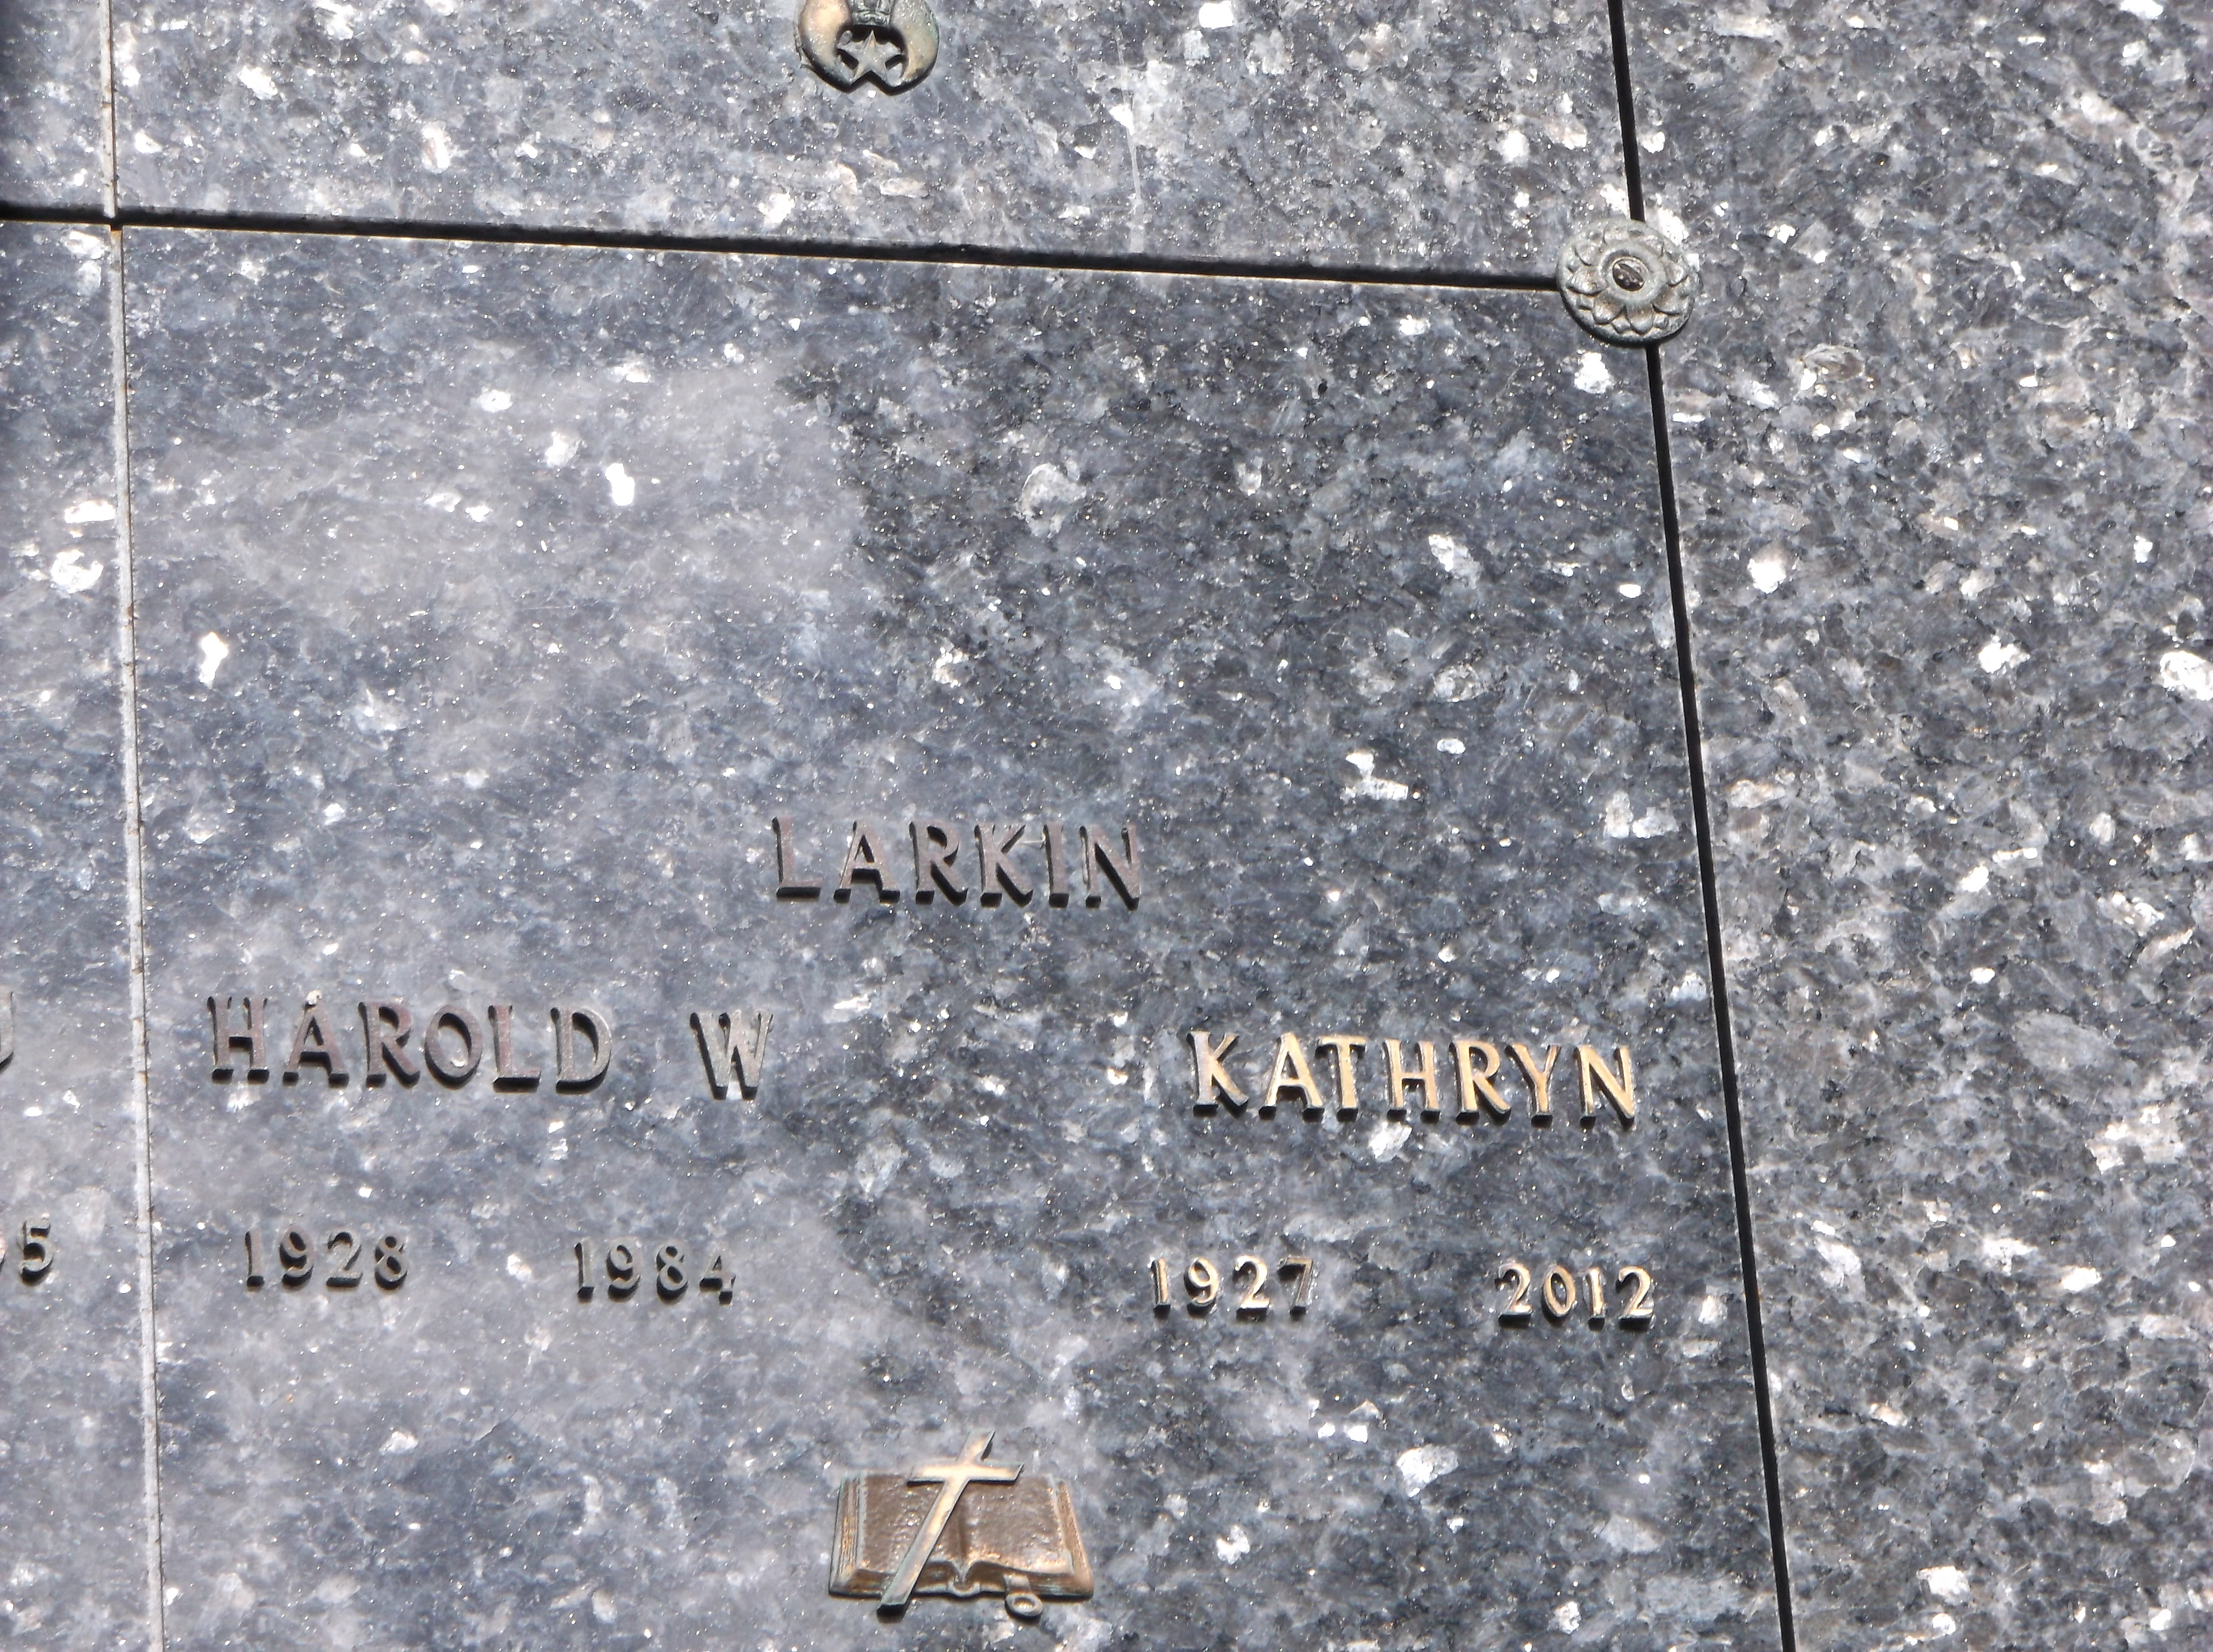 Harold W Larkin